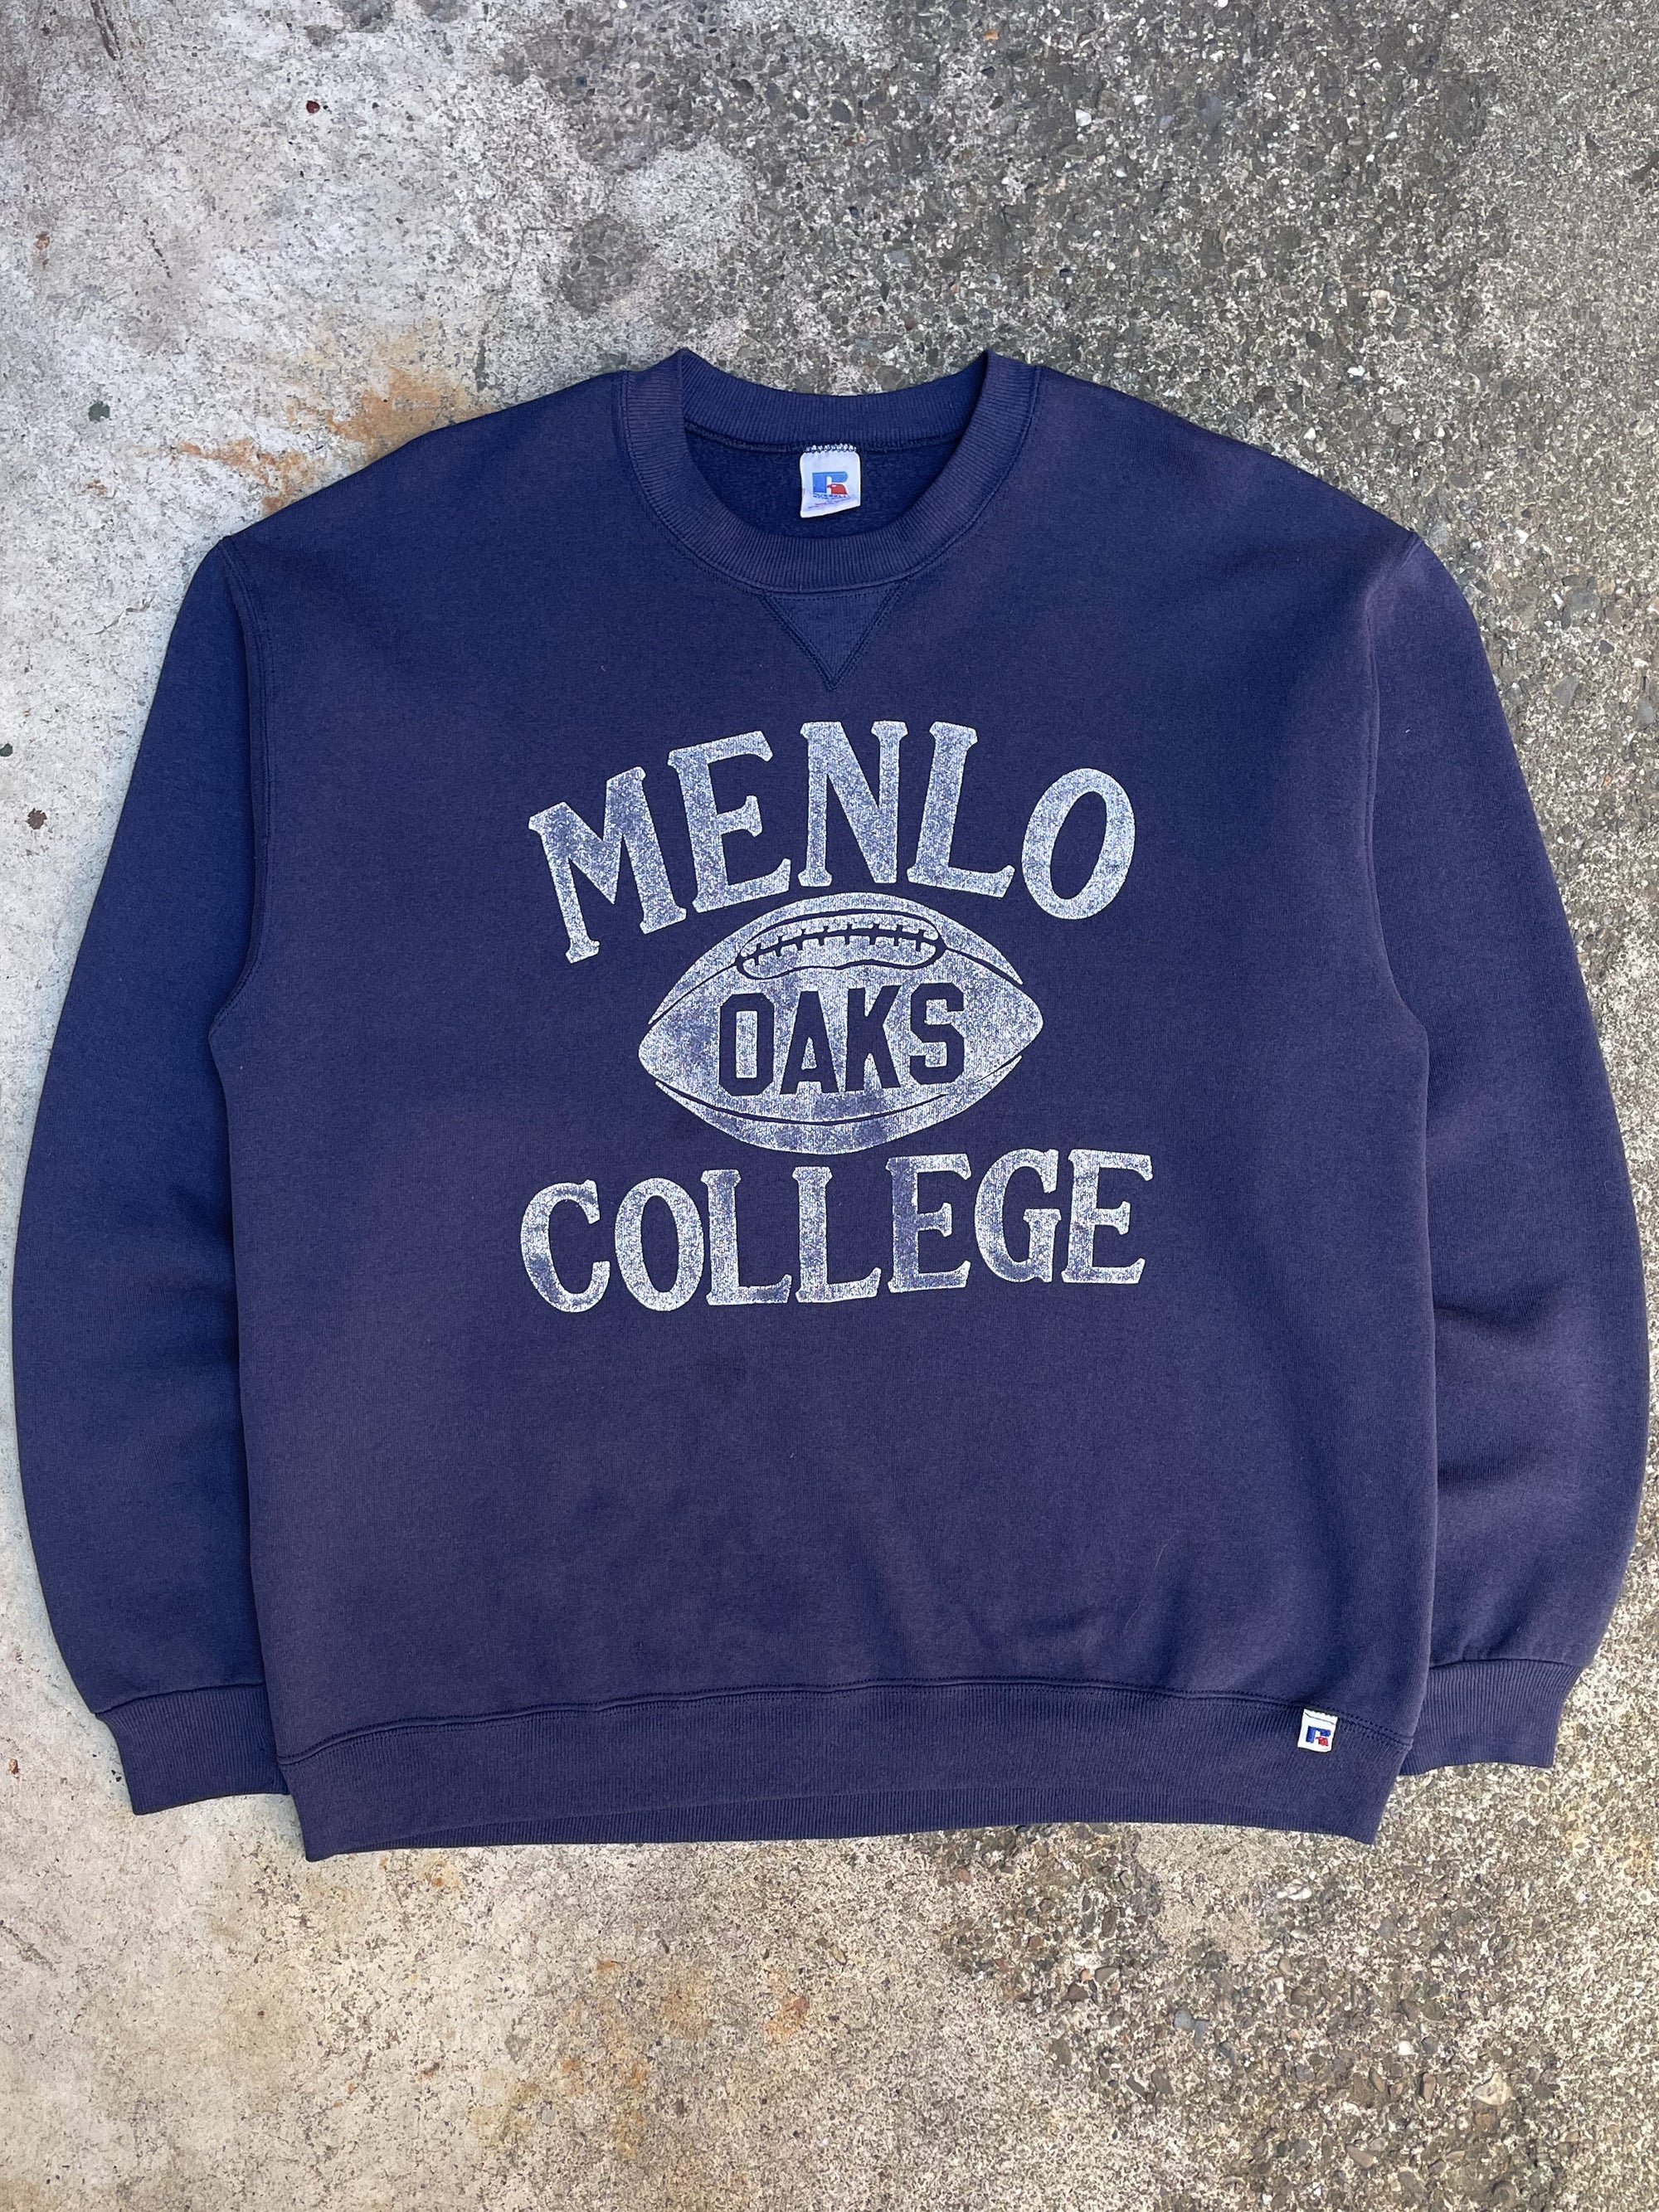 1980s Russell “Menlo College” Sweatshirt (L)